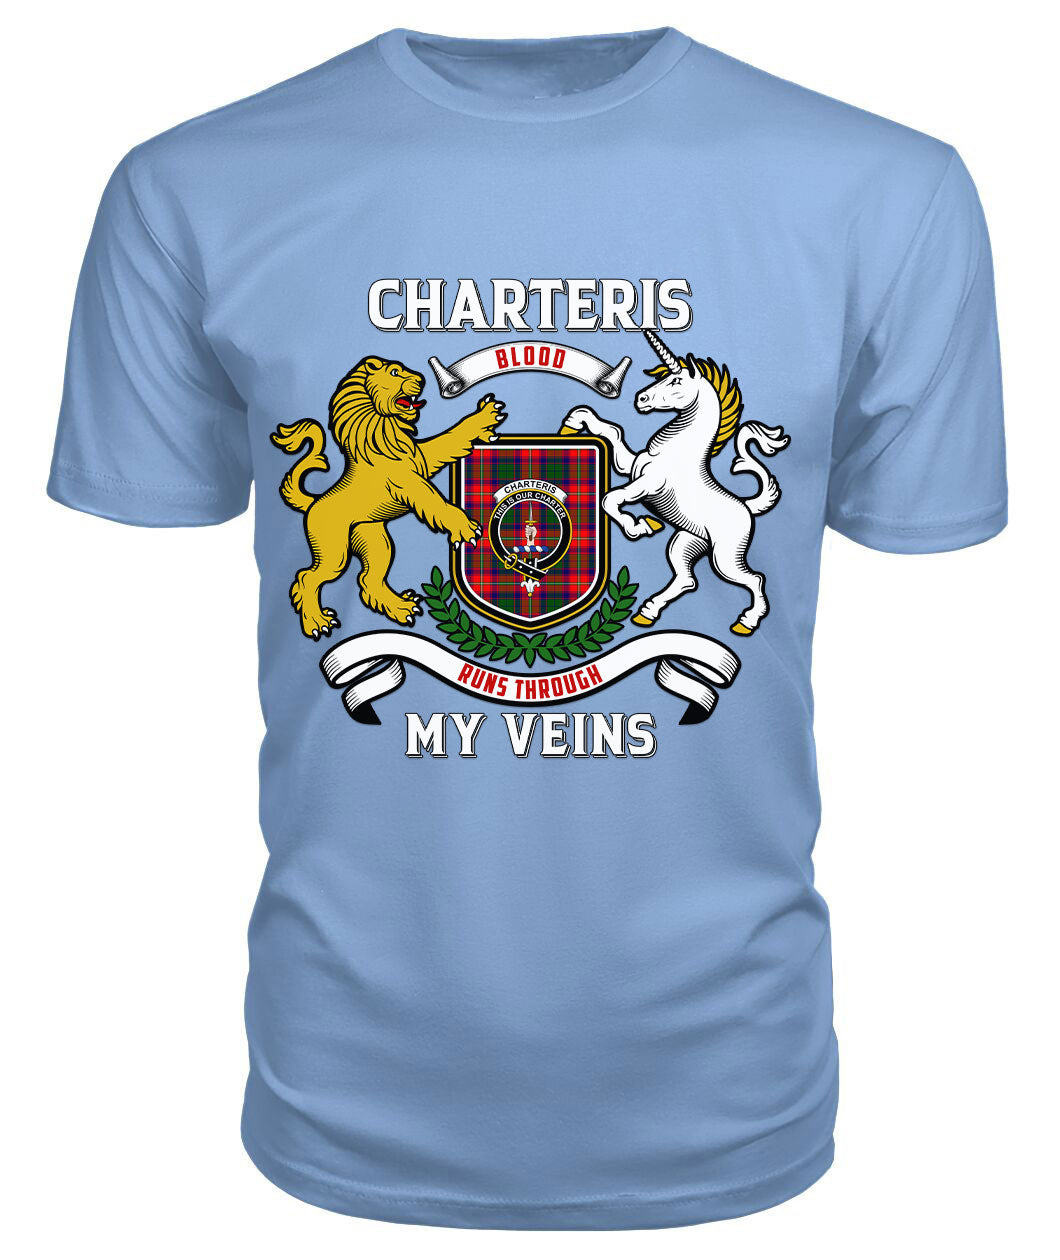 Charteris (Earl of Wemyss) Tartan Crest 2D T-shirt - Blood Runs Through My Veins Style